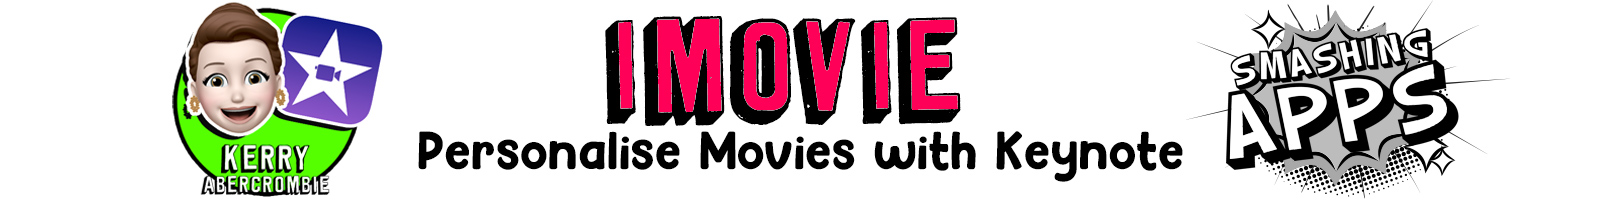 Subtitle: iMovie - Personalising Movies with Keynote